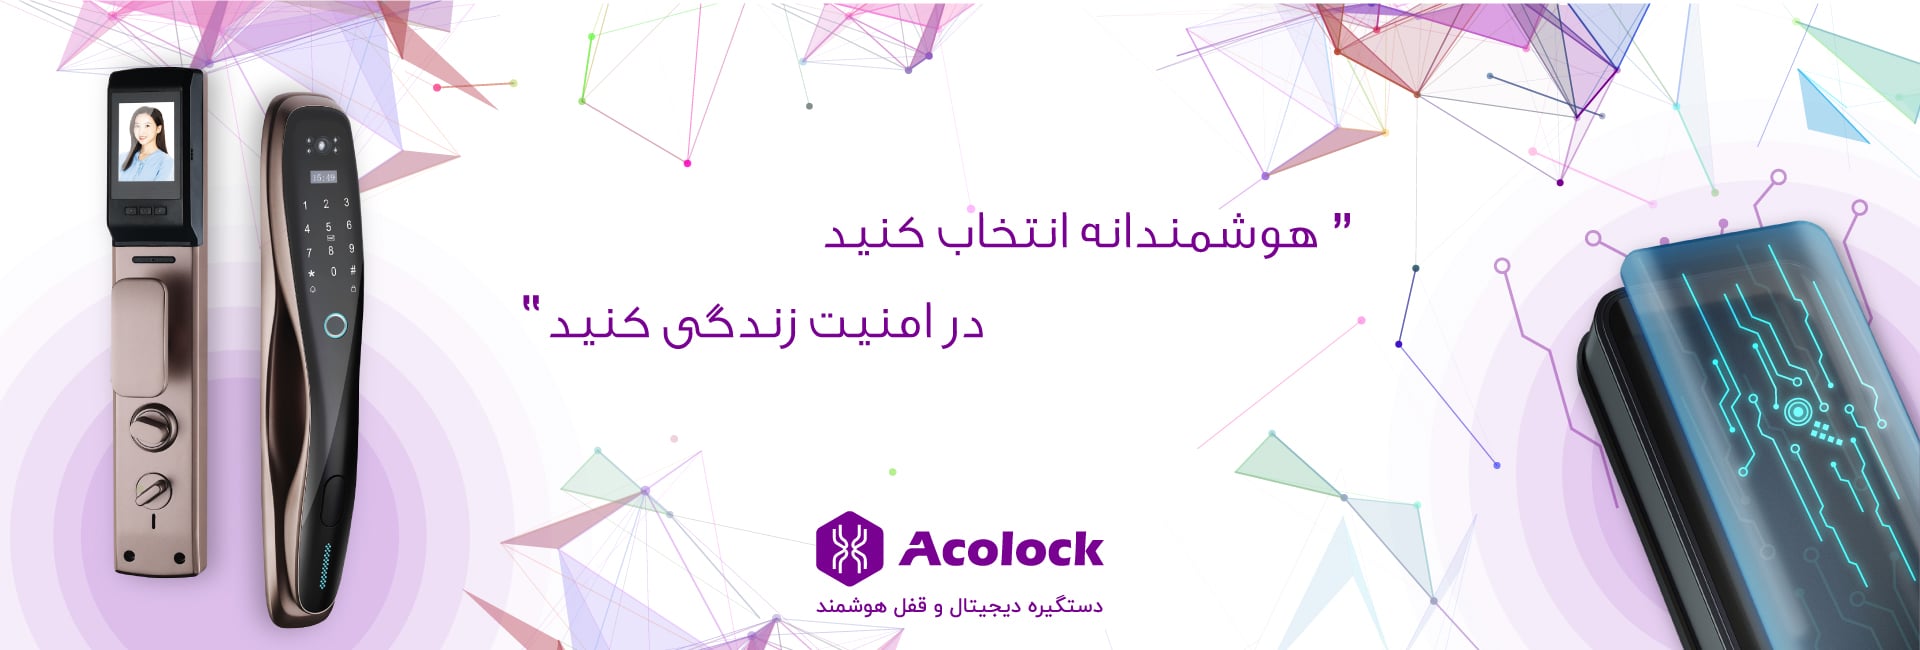 آکولاک - هوشمندانه انتخاب کنید، در امنیت زندگی کنید